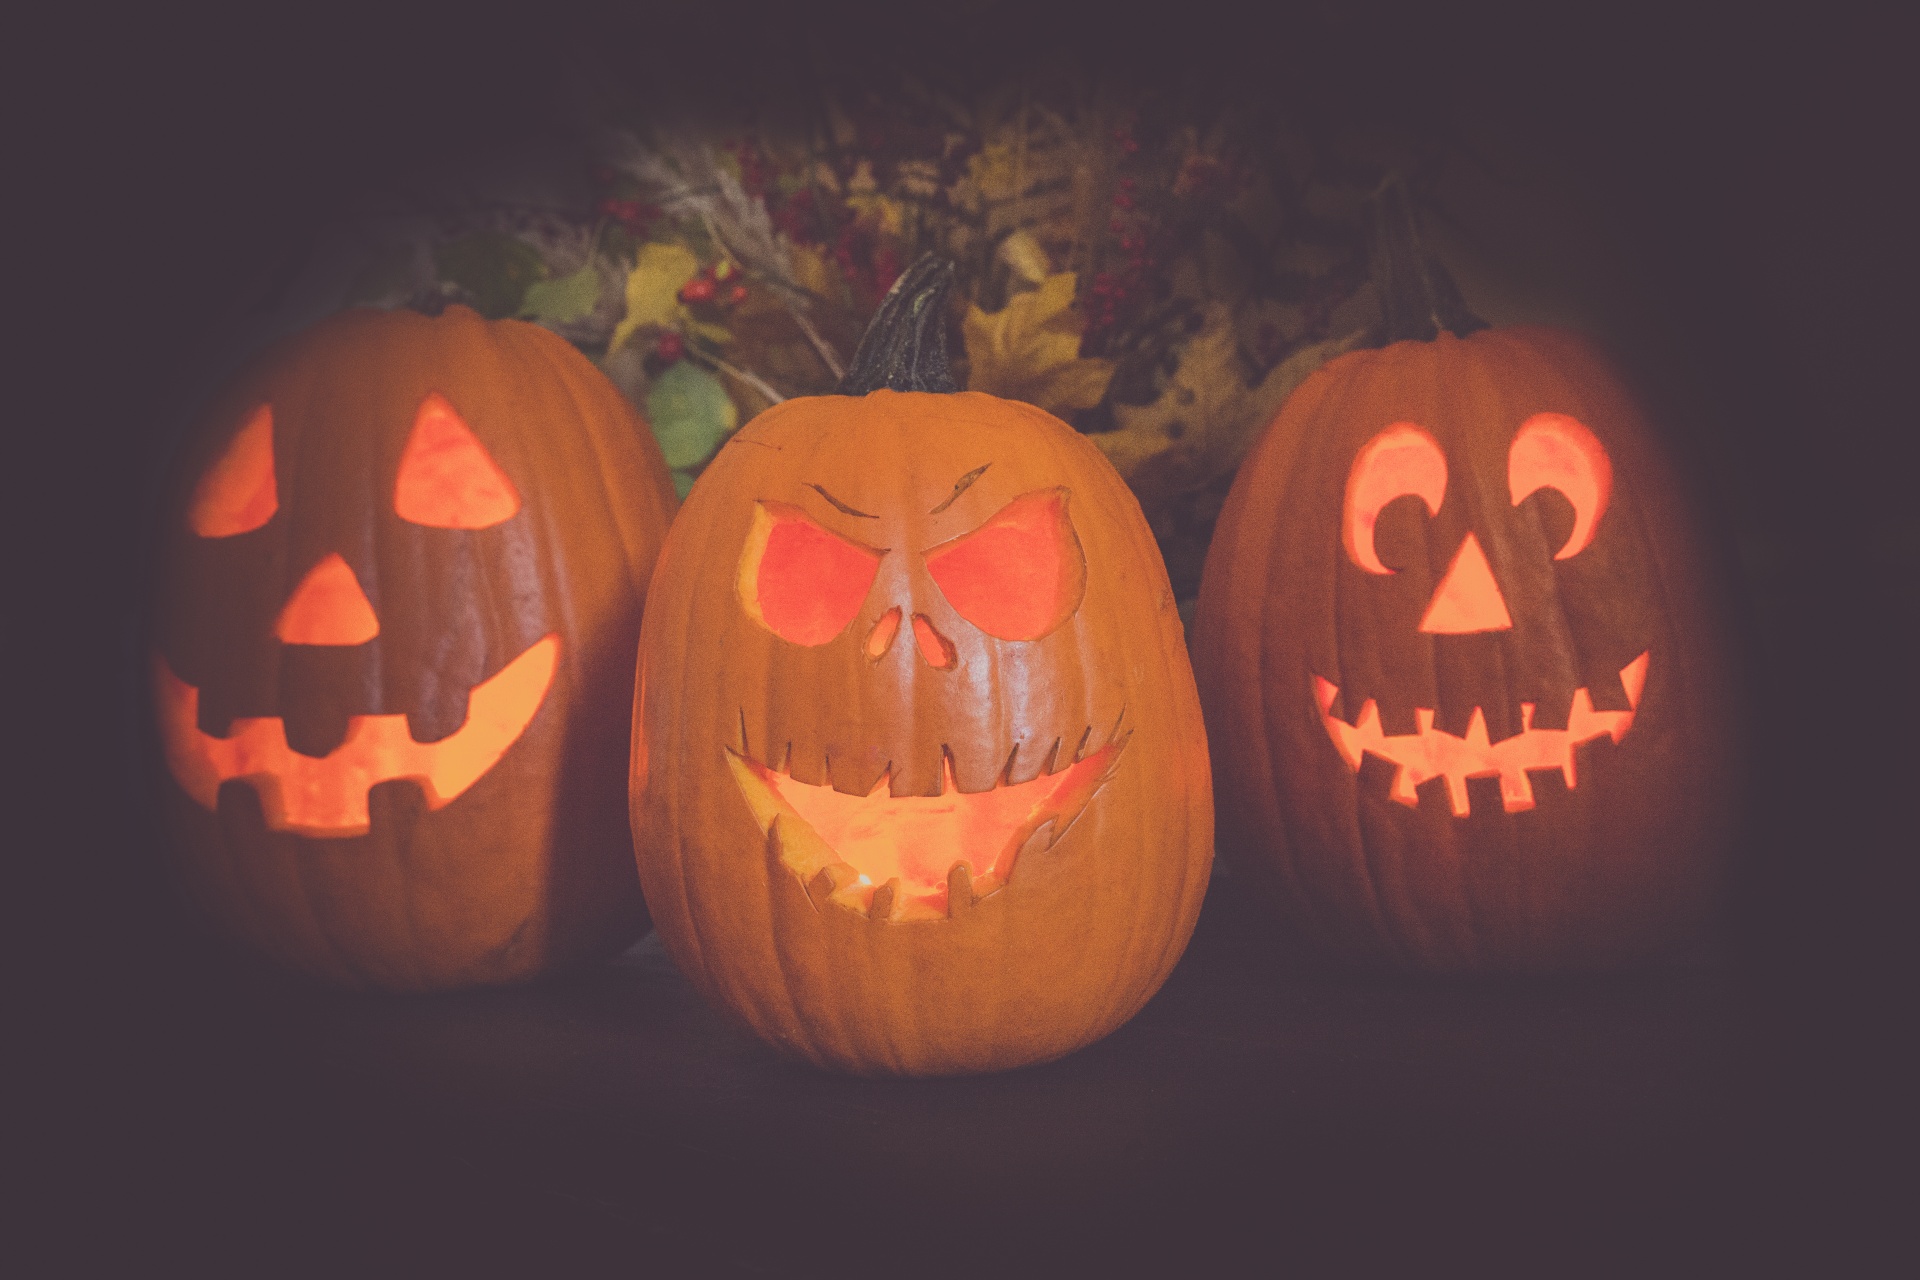 Halloween Pumpkin Faces